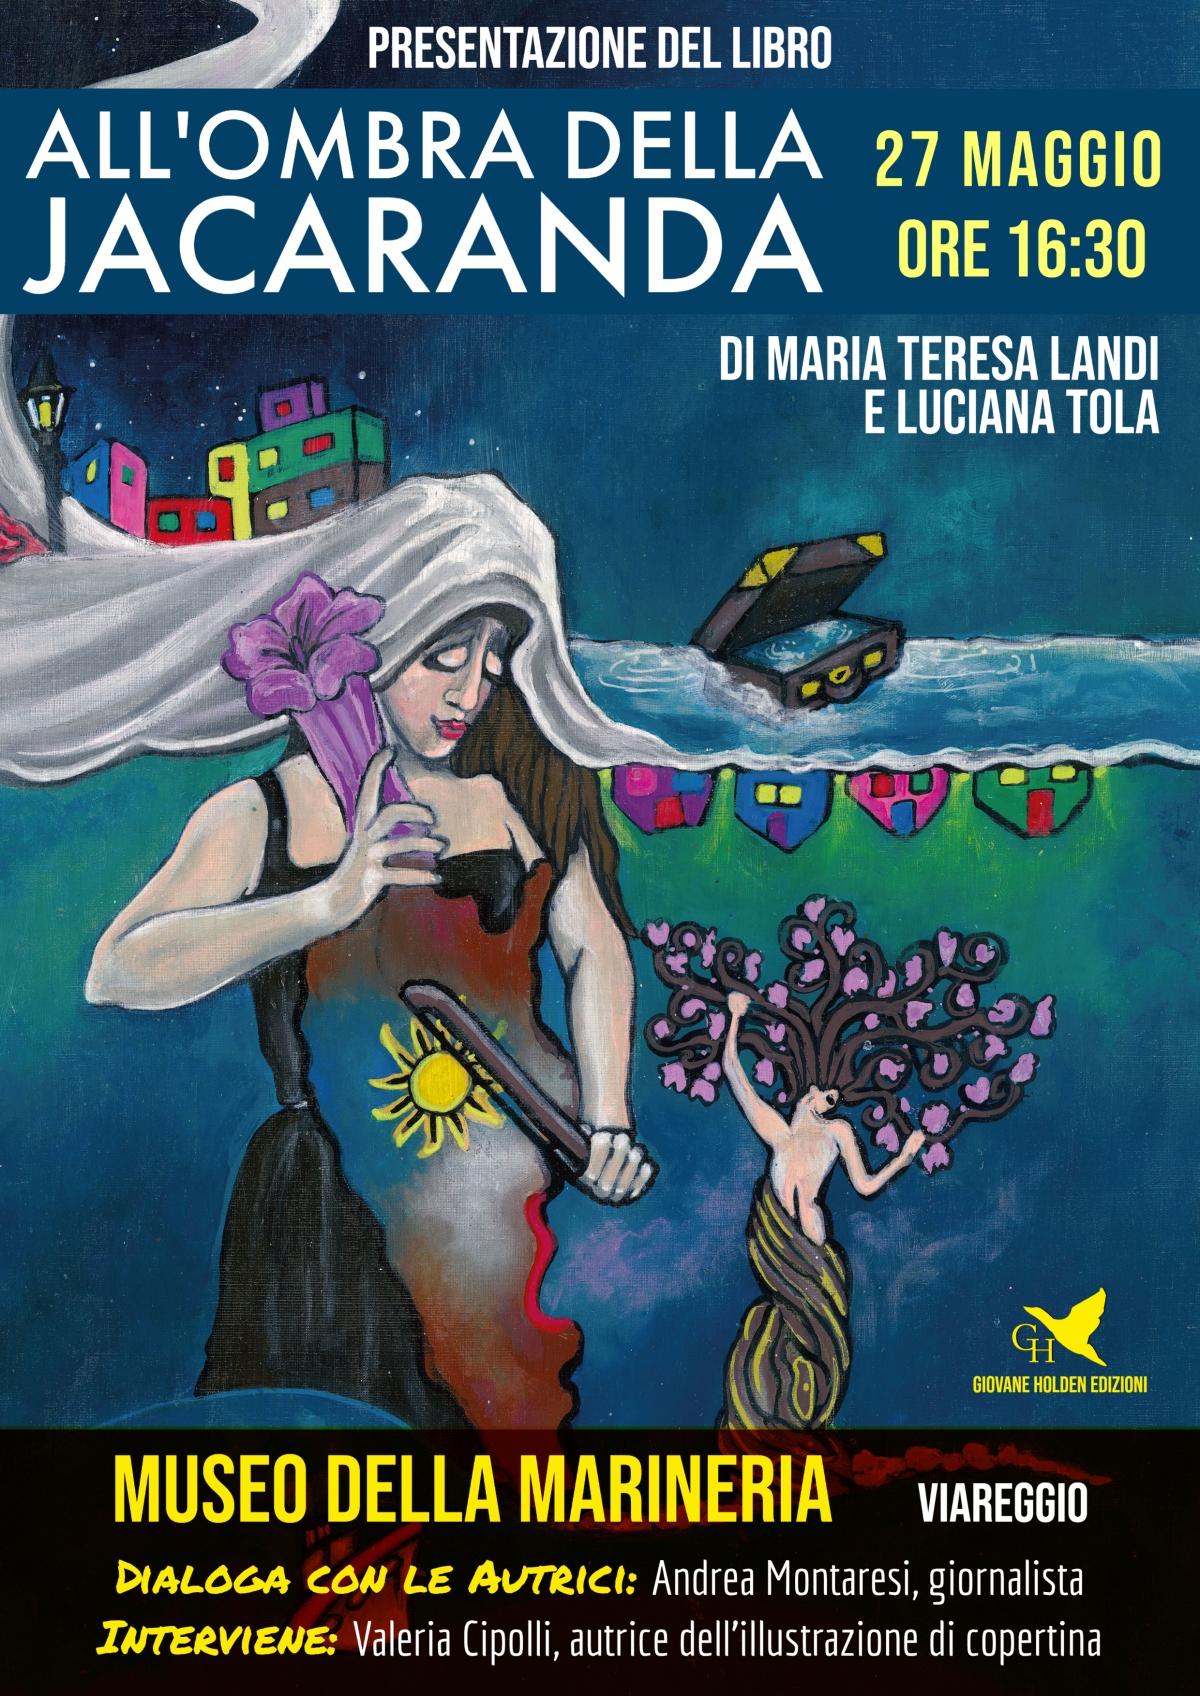 All’ombra della jacaranda. Al Museo della Marineria si presenta il libro di Maria Teresa Landi e Luciana Tola